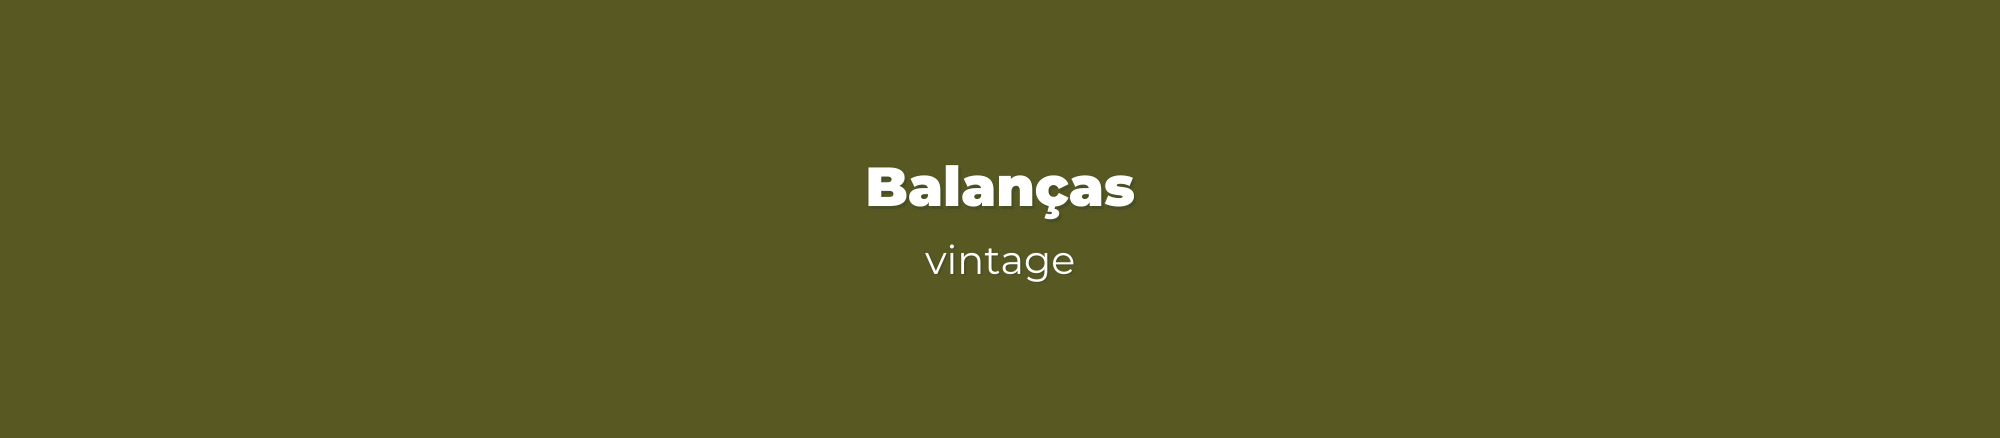 coleção de balanças vintage veentx